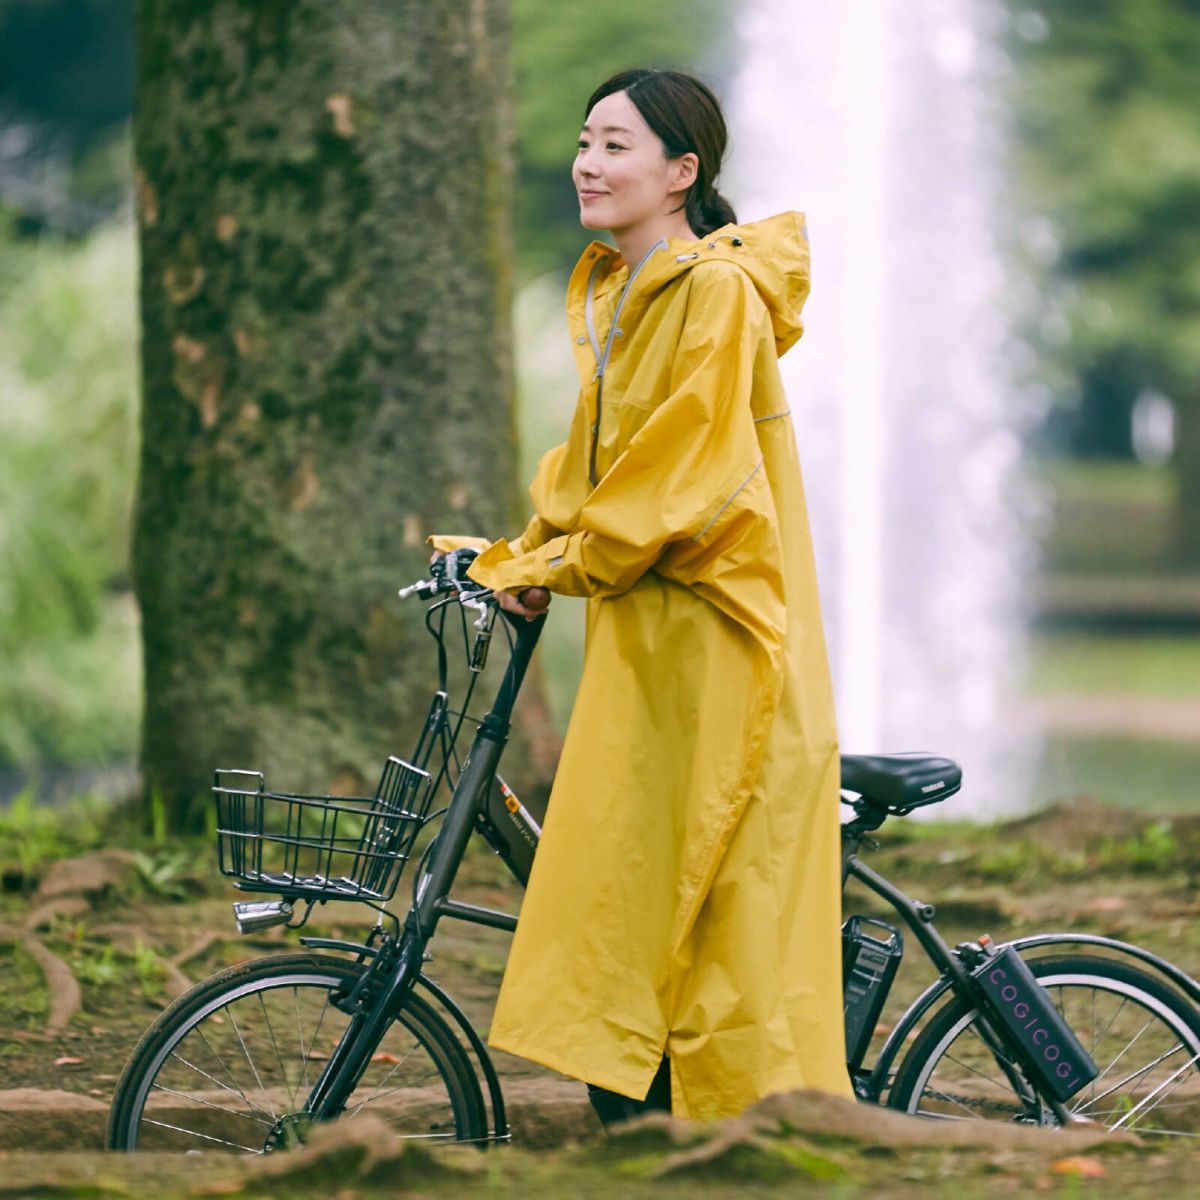 QIAN レインコート 自転車 メンズ レディース レインポンチョ 雨具 ポンチョ 通学通勤 軽量 完全防水 防汚 防風 男女兼用 通販 